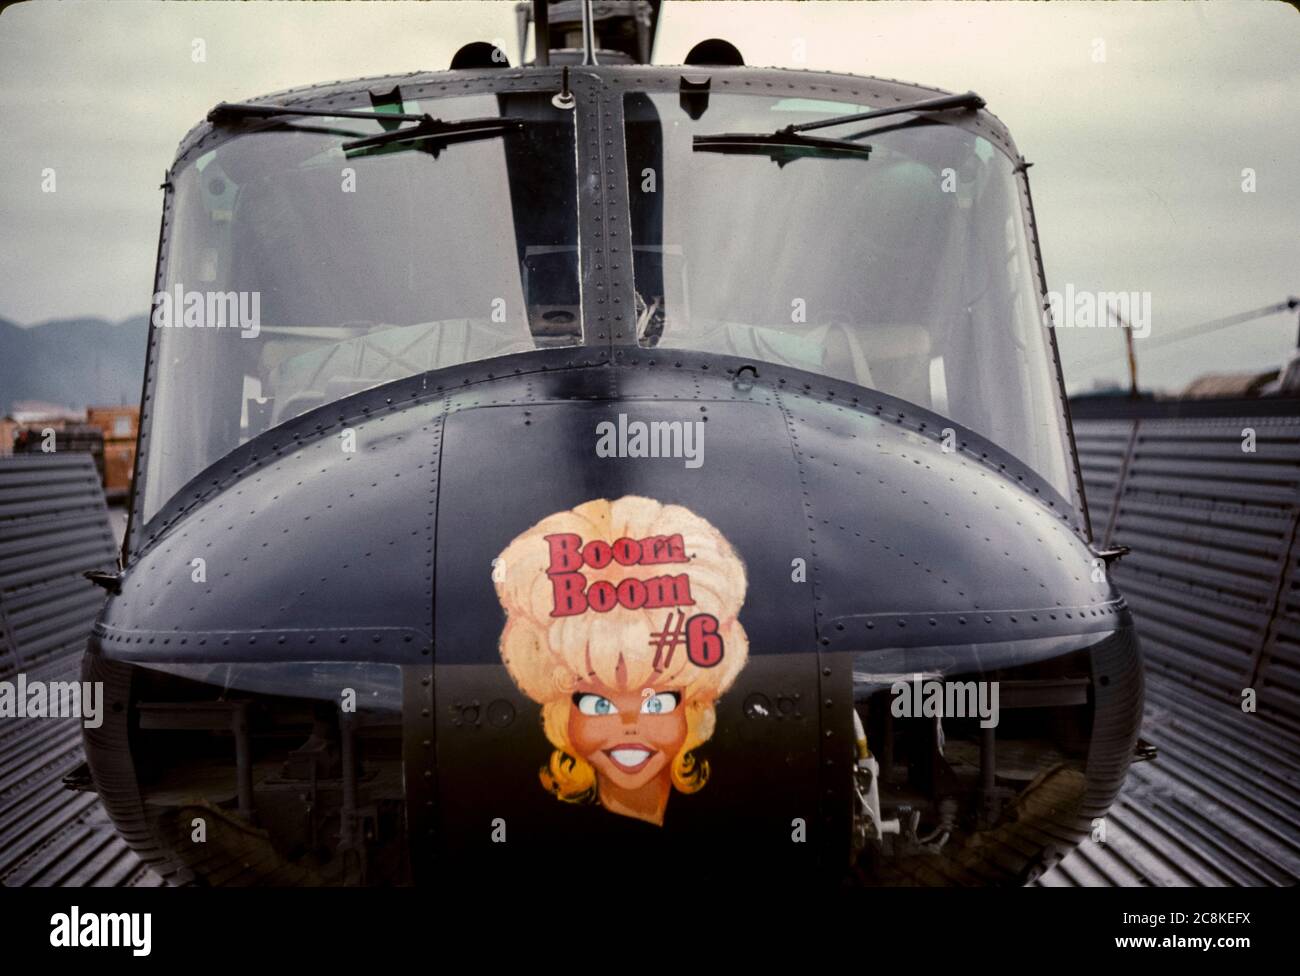 Boom Boom #6 el arte de la nariz se pinta en un helicóptero Huey del Ejército de los Estados Unidos desde el 15º Batallón de Transporte, ya que el helicóptero se estaciona en una renovación mientras no se está volando durante la Guerra de Vietnam. Foto de stock